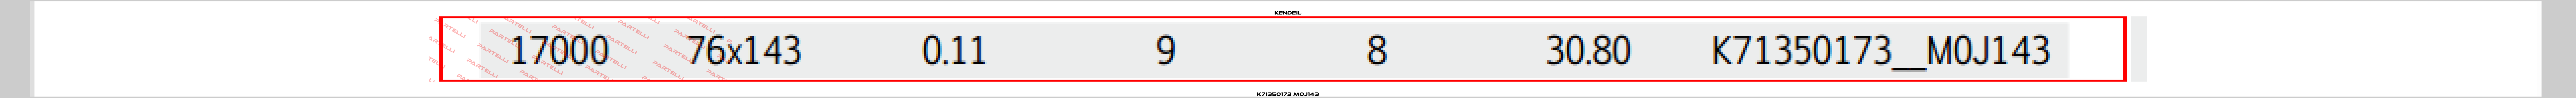 K71350173 M0J143 Kendeil